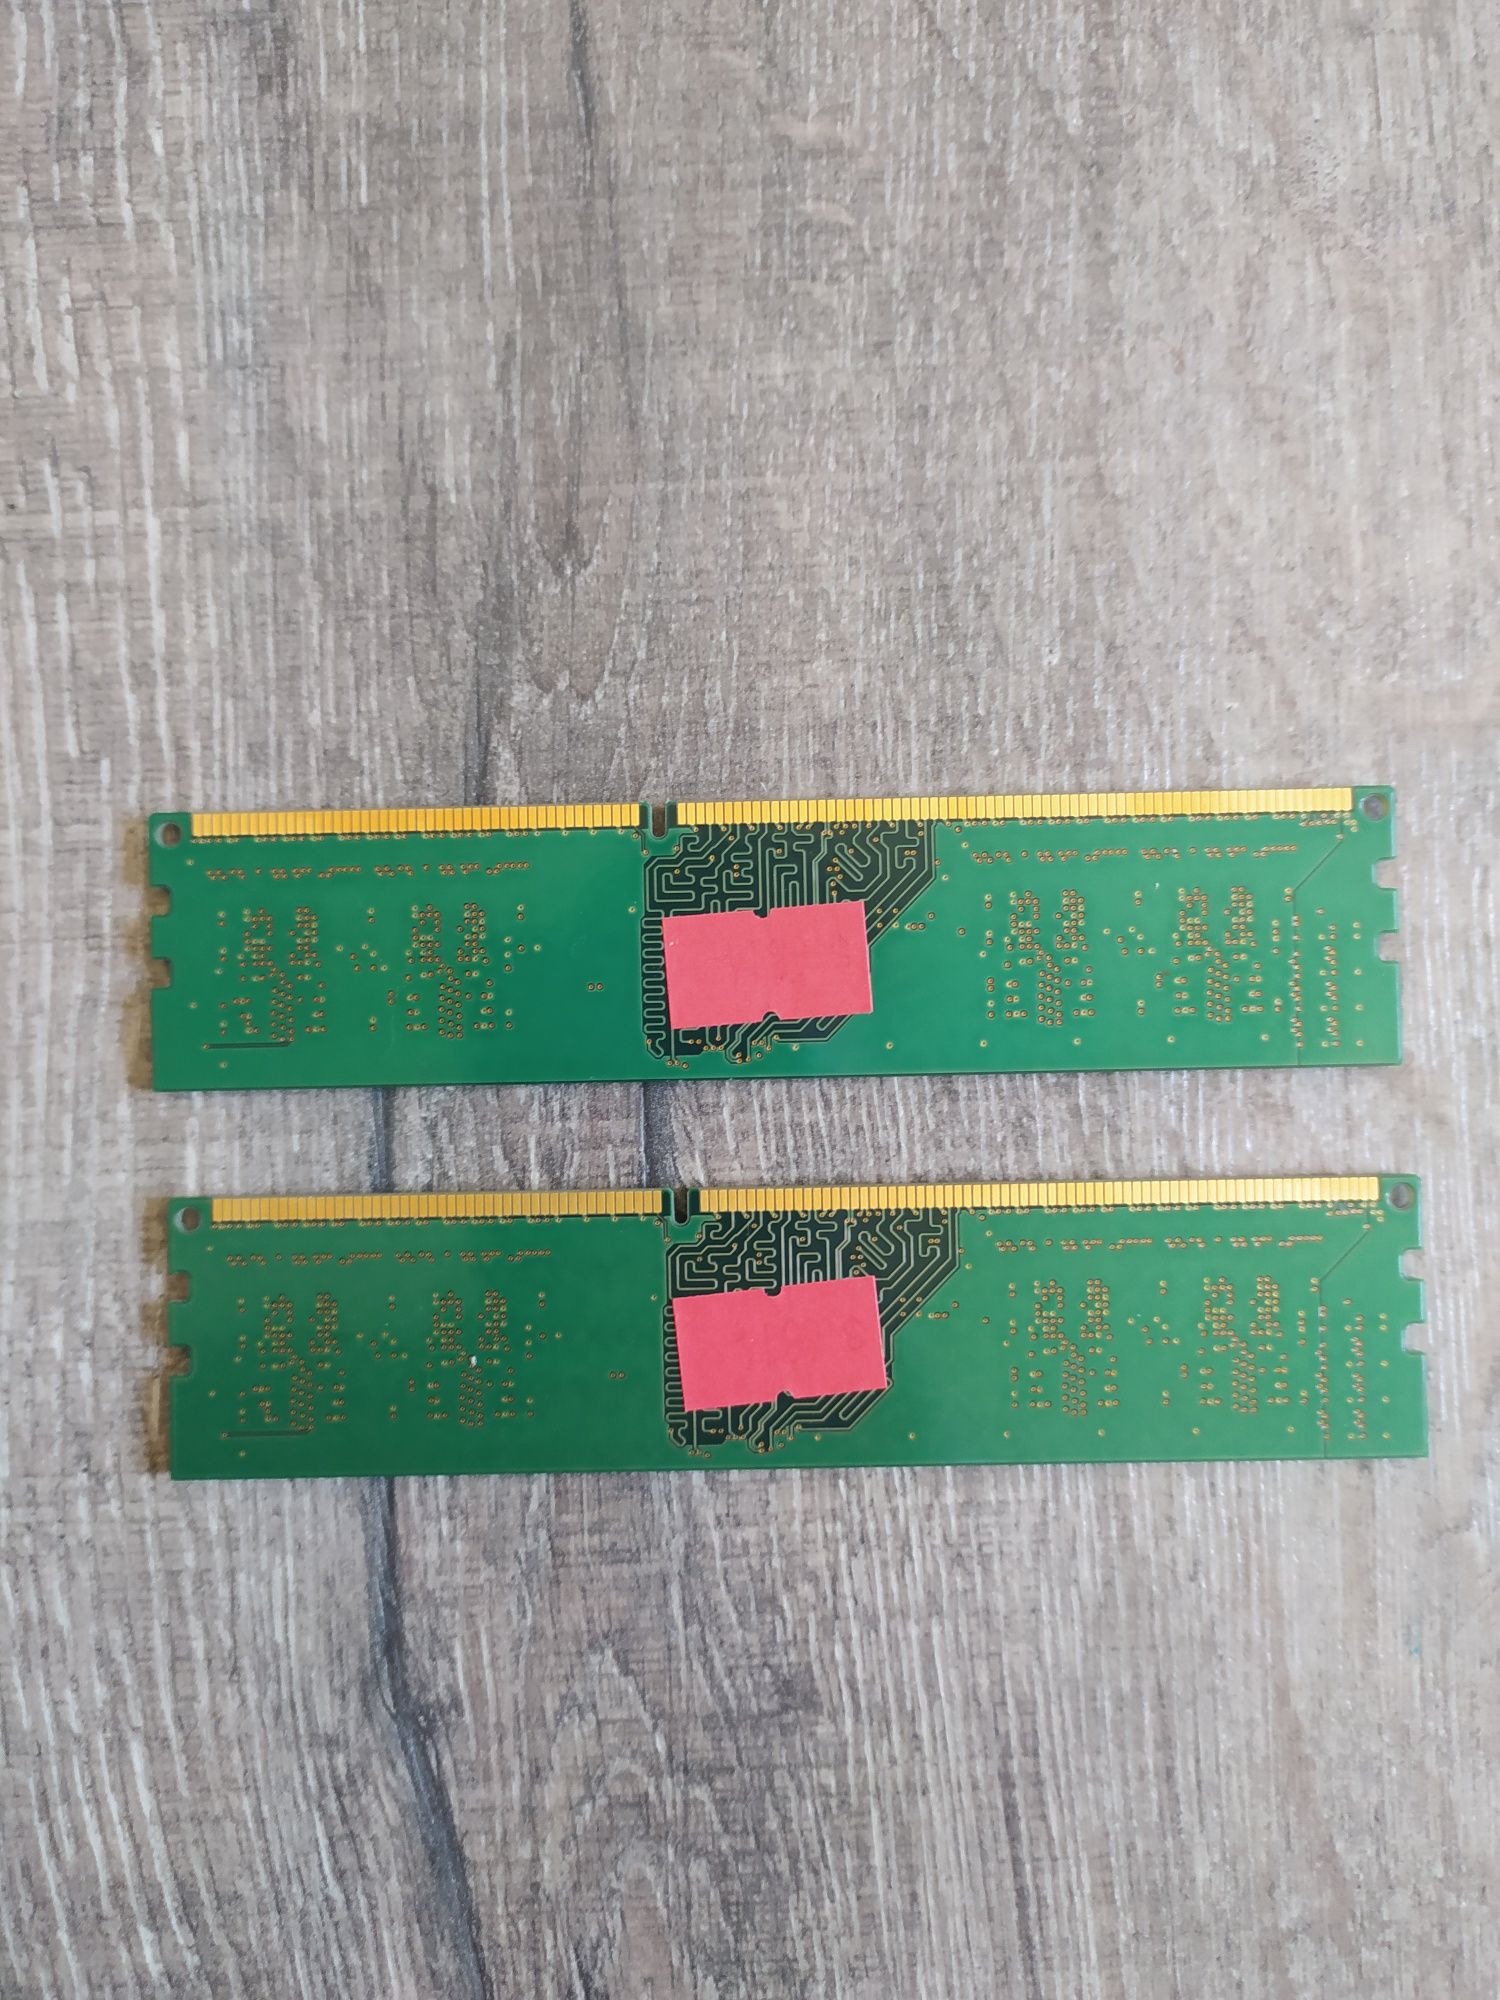 Kości RAM Kingston 2x 2GB Wysyłka